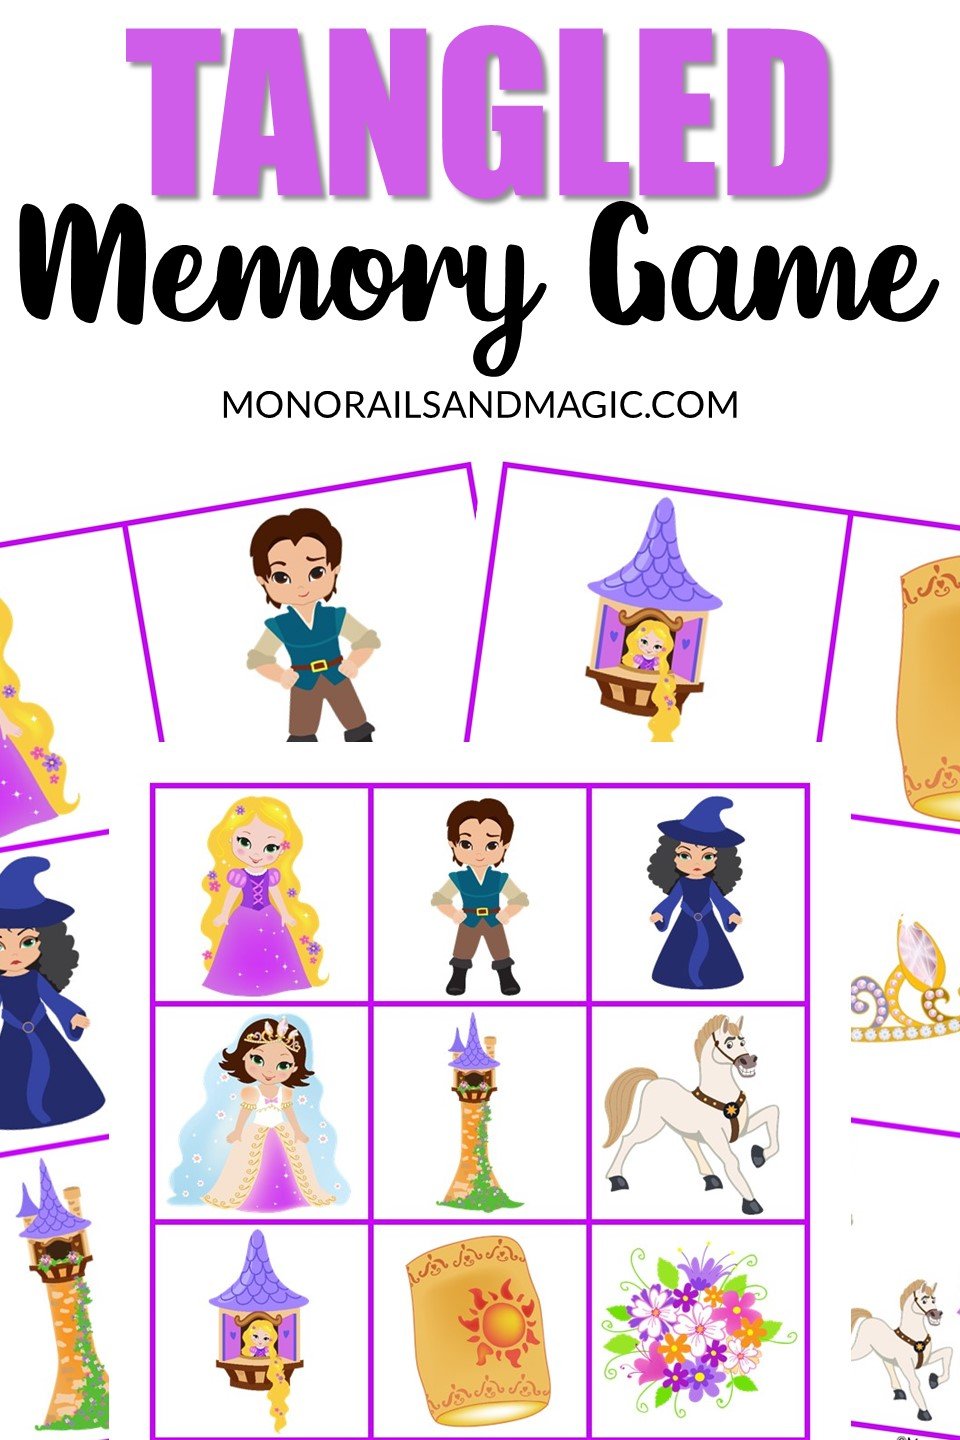 Free printable Tangled memory game for kids.